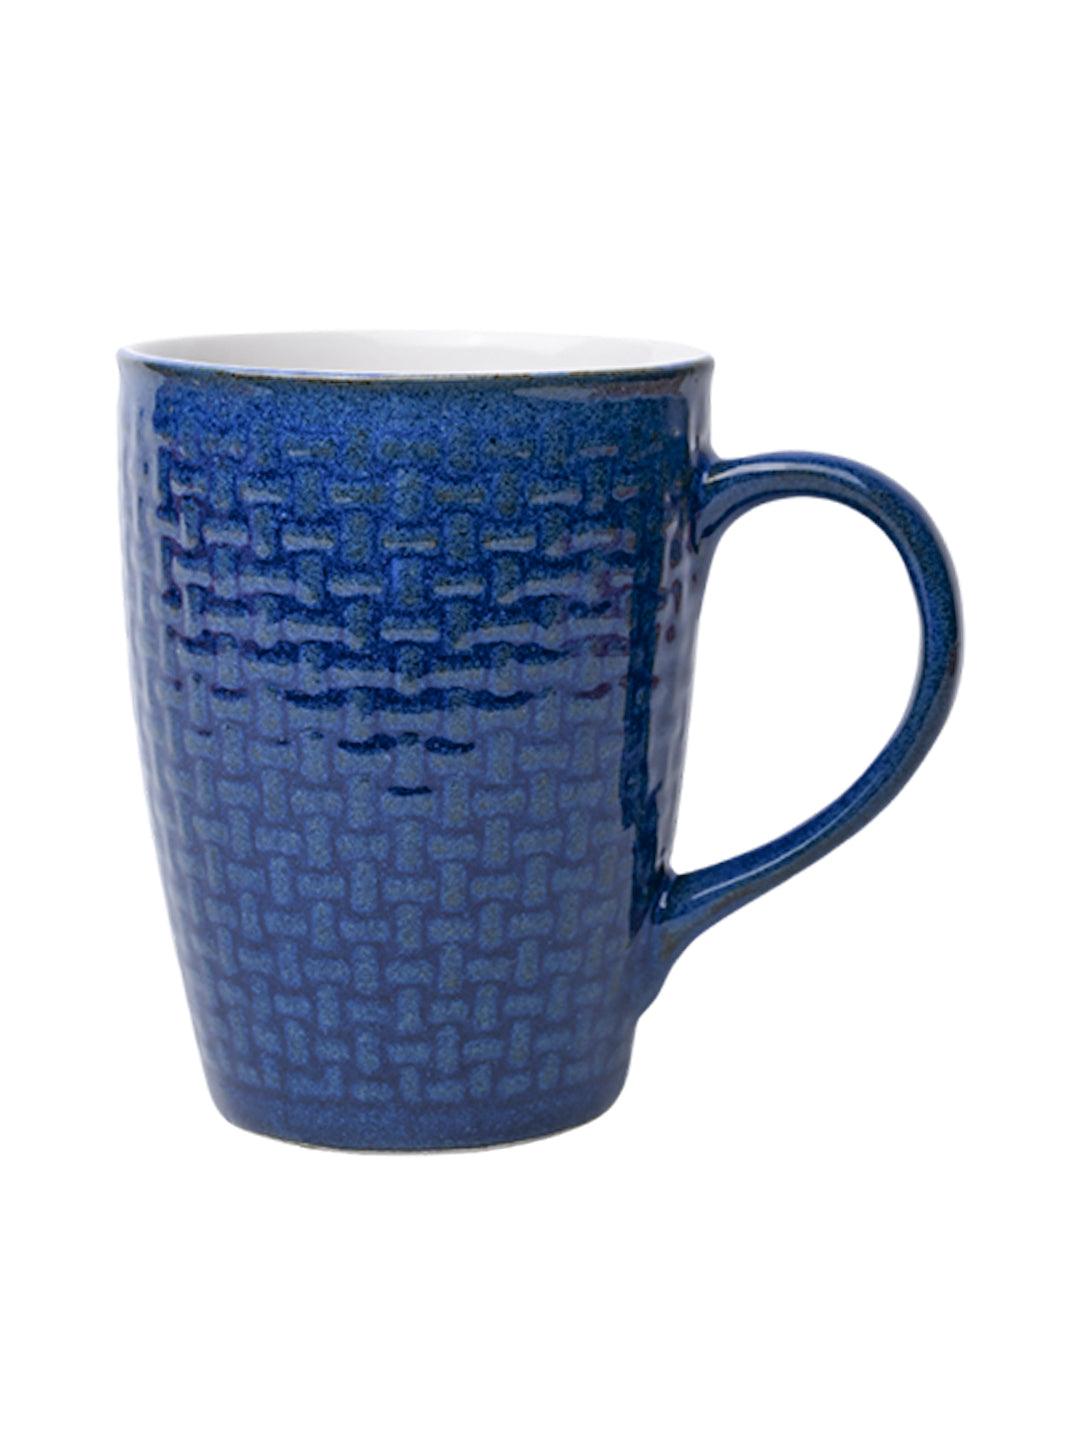 VON CASA Ceramic Coffee Mug - 320 Ml, Blue - MARKET 99